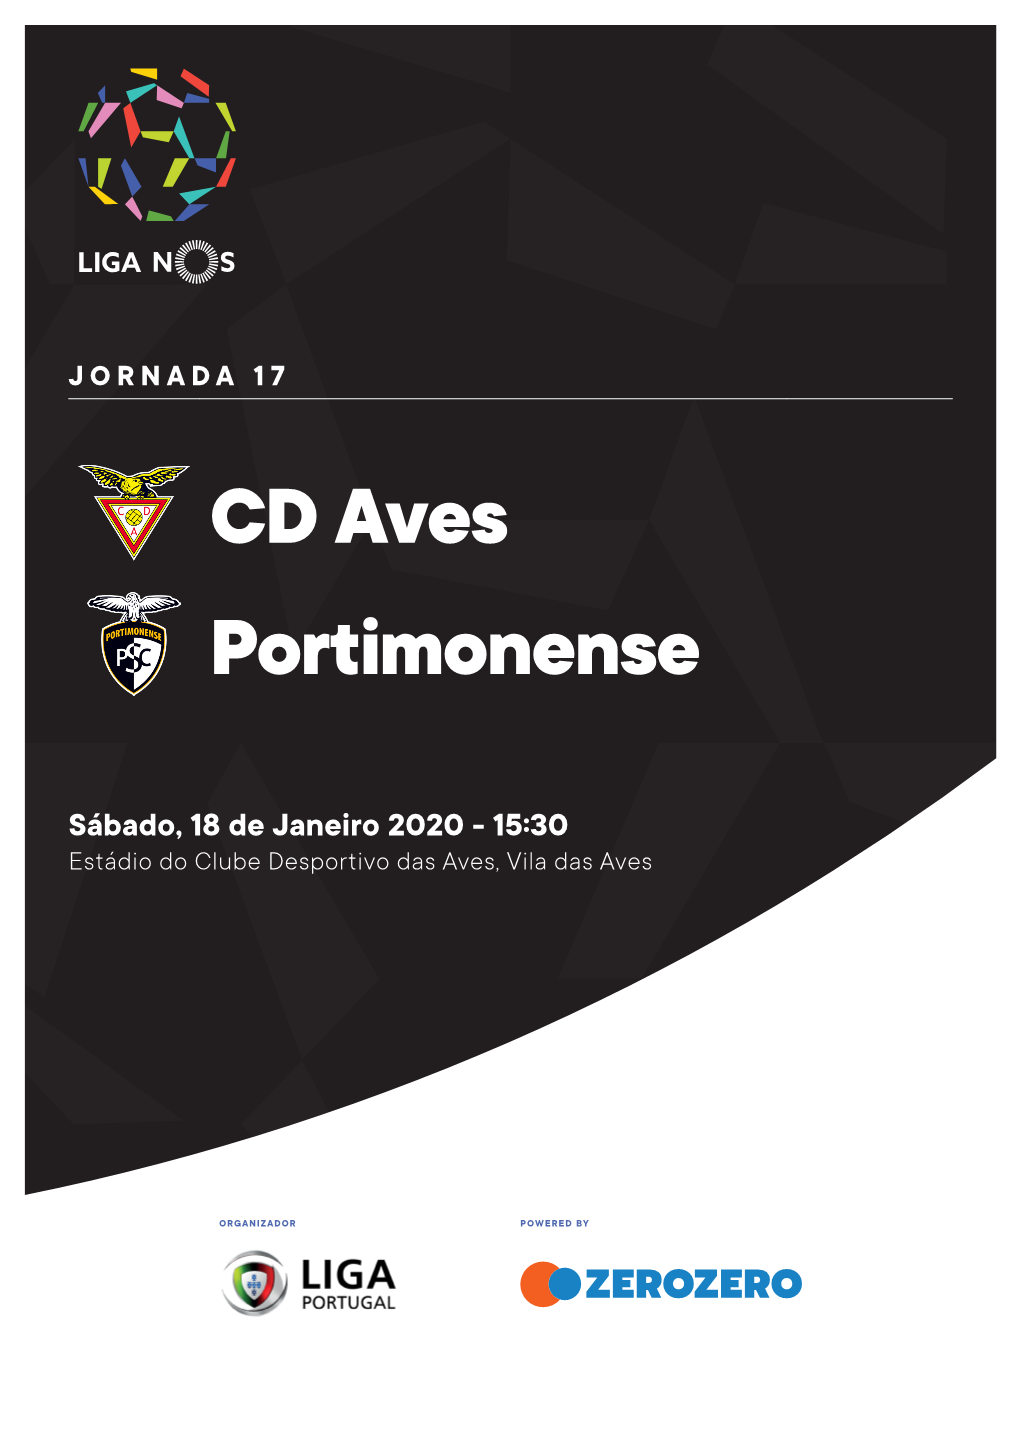 CD Aves Portimonense